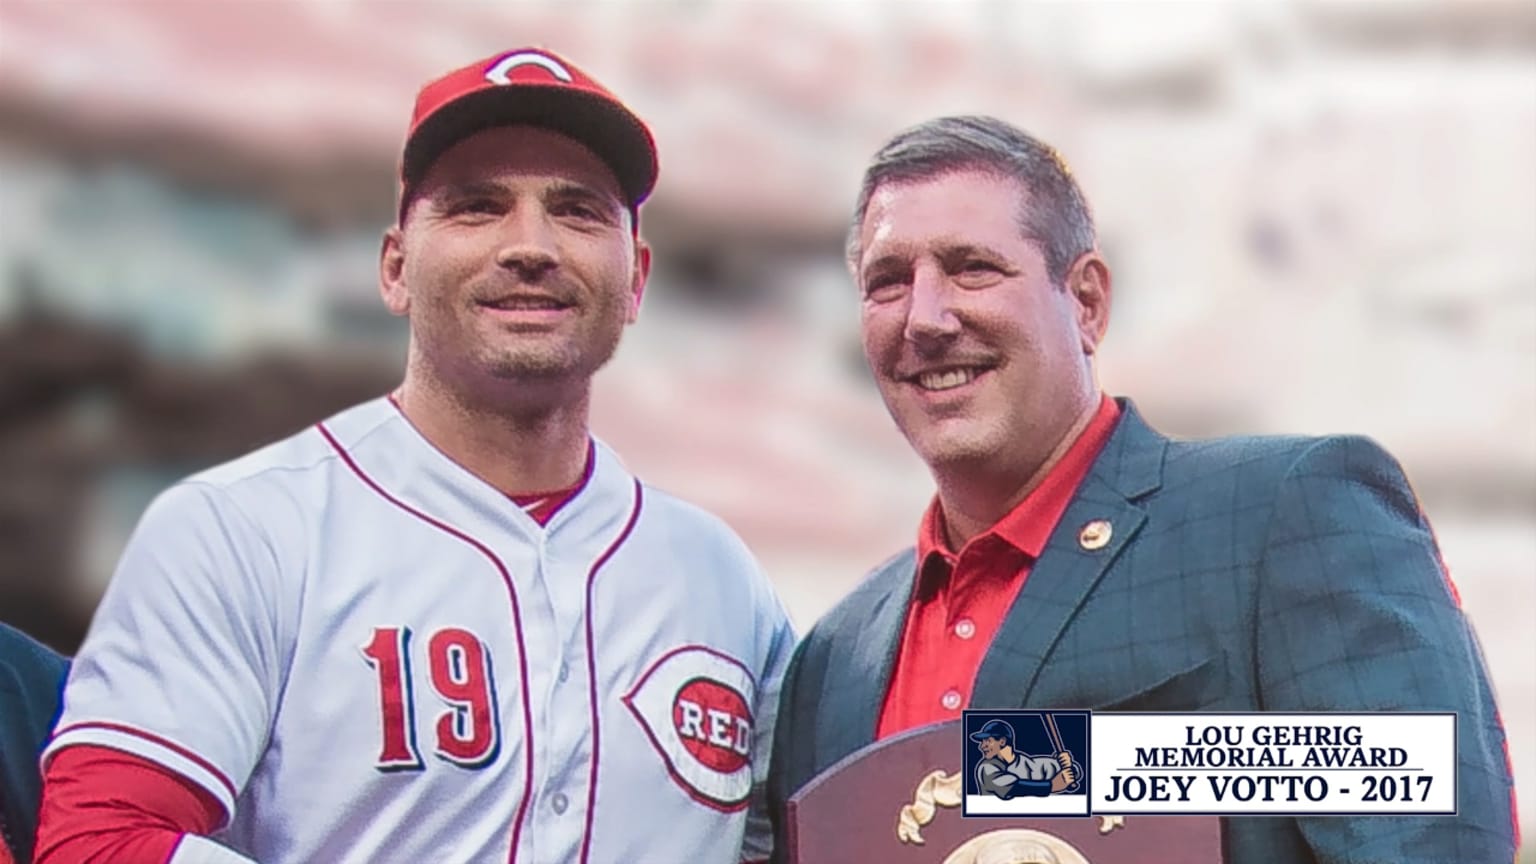 Joey Votto Wins Lou Gehrig Memorial Award